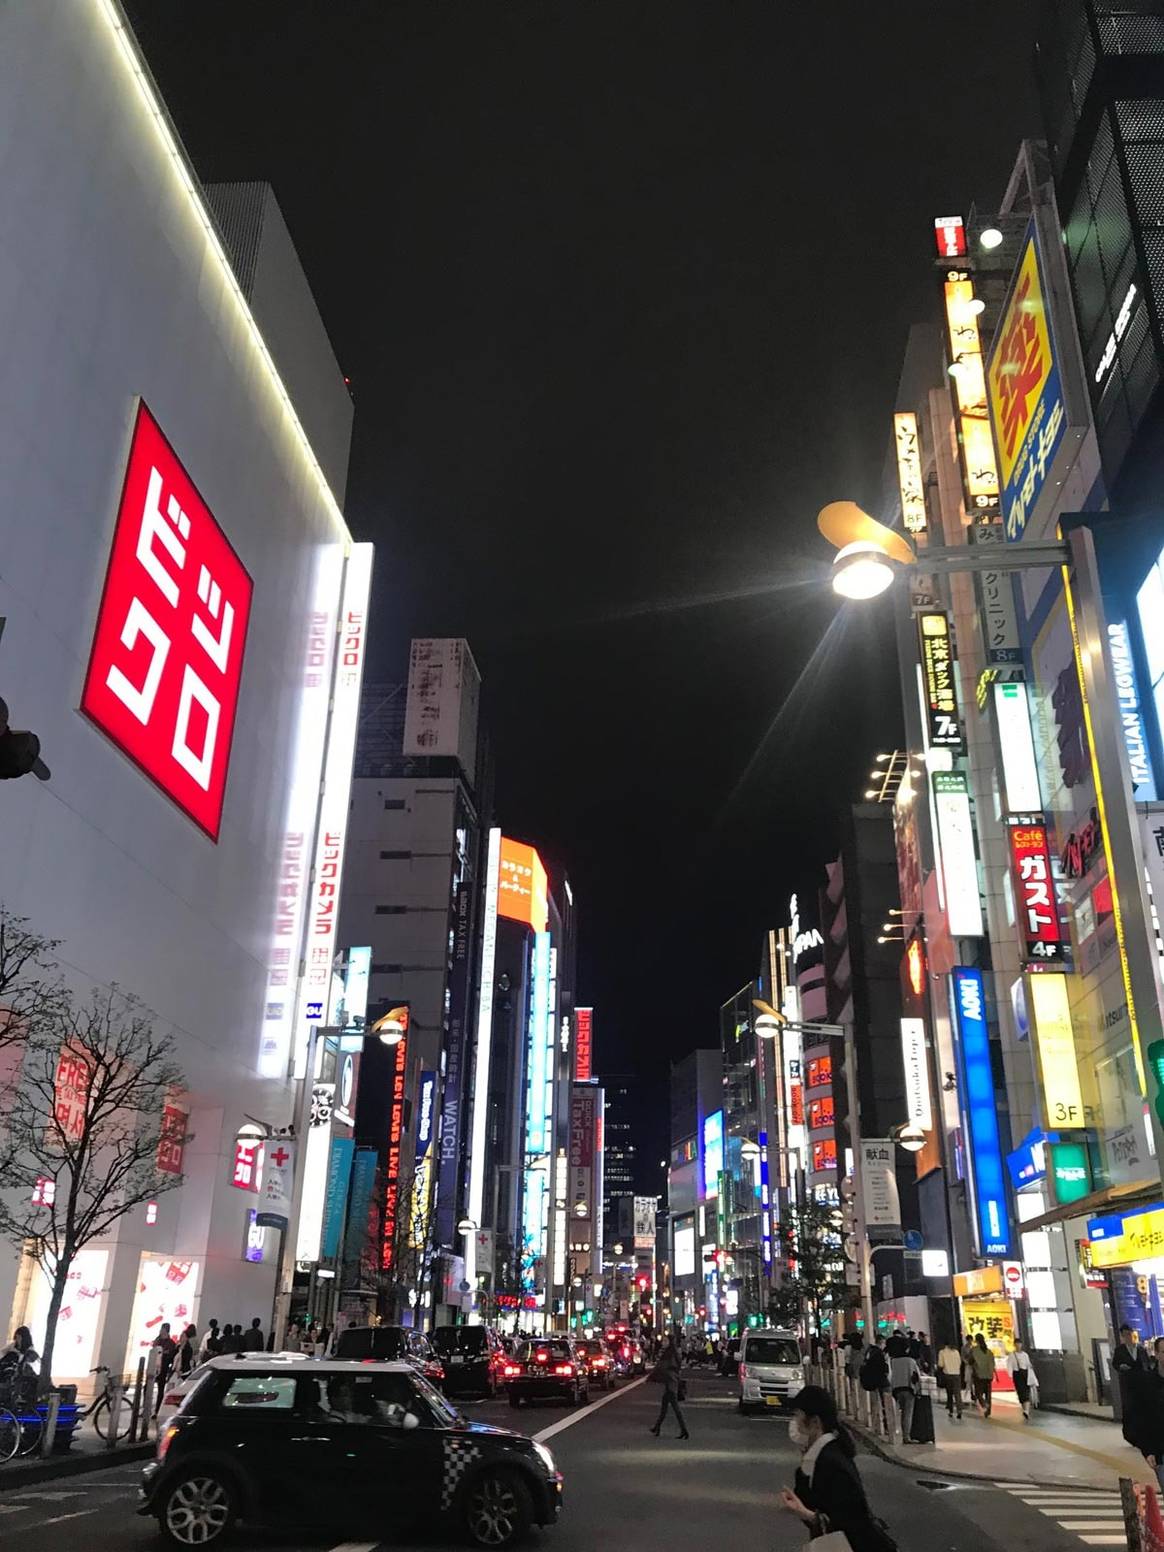 Comment le Japon est passé maître dans l'art de la vente et de l'expérience retail